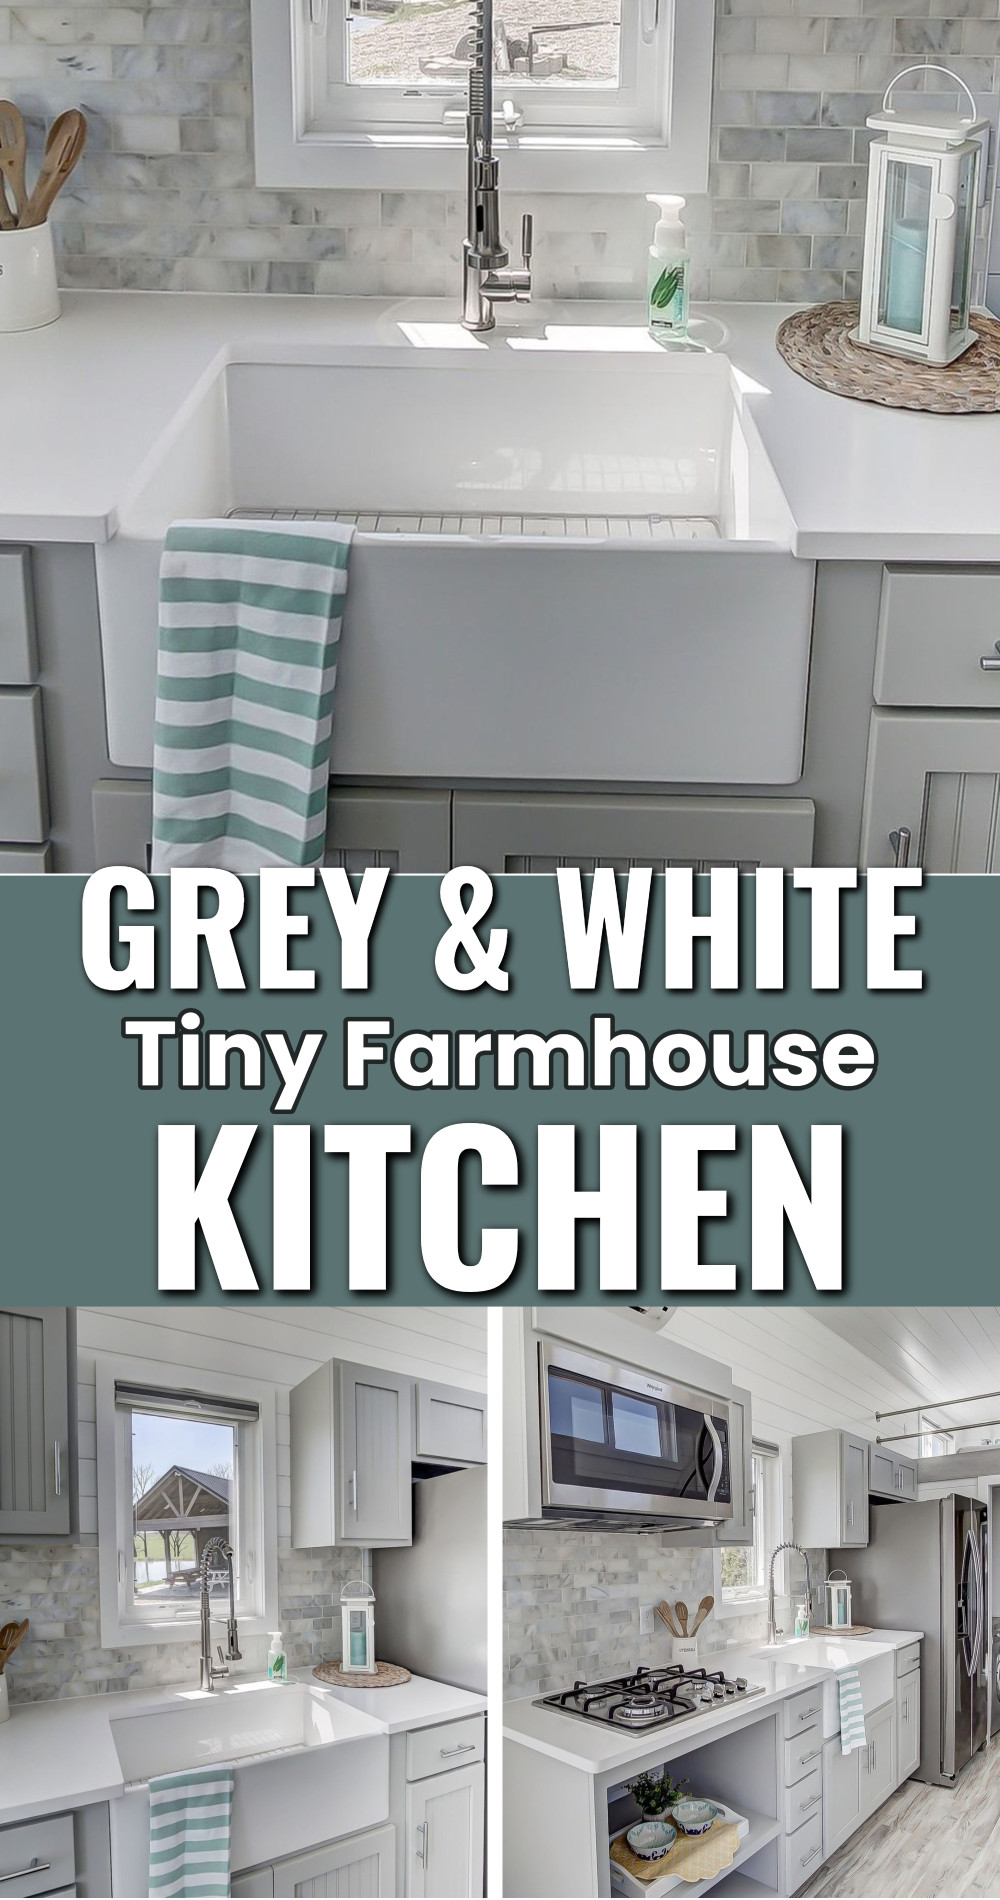 Gray and white kitchen ideas